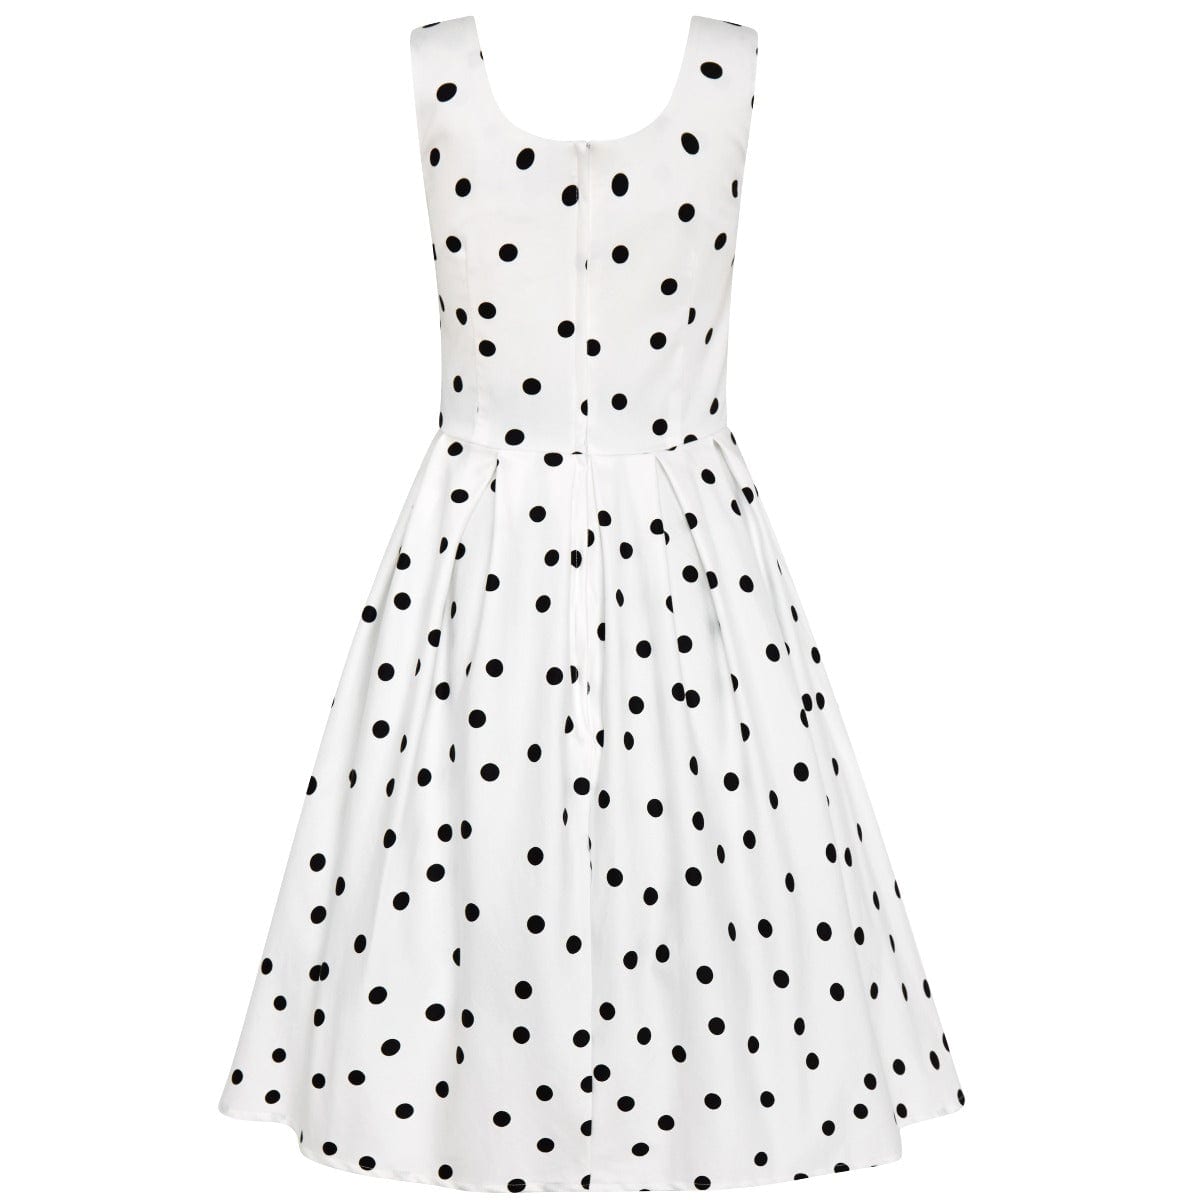 Amanda Scoop Neck Polka Dot Swing Dress in White-Black